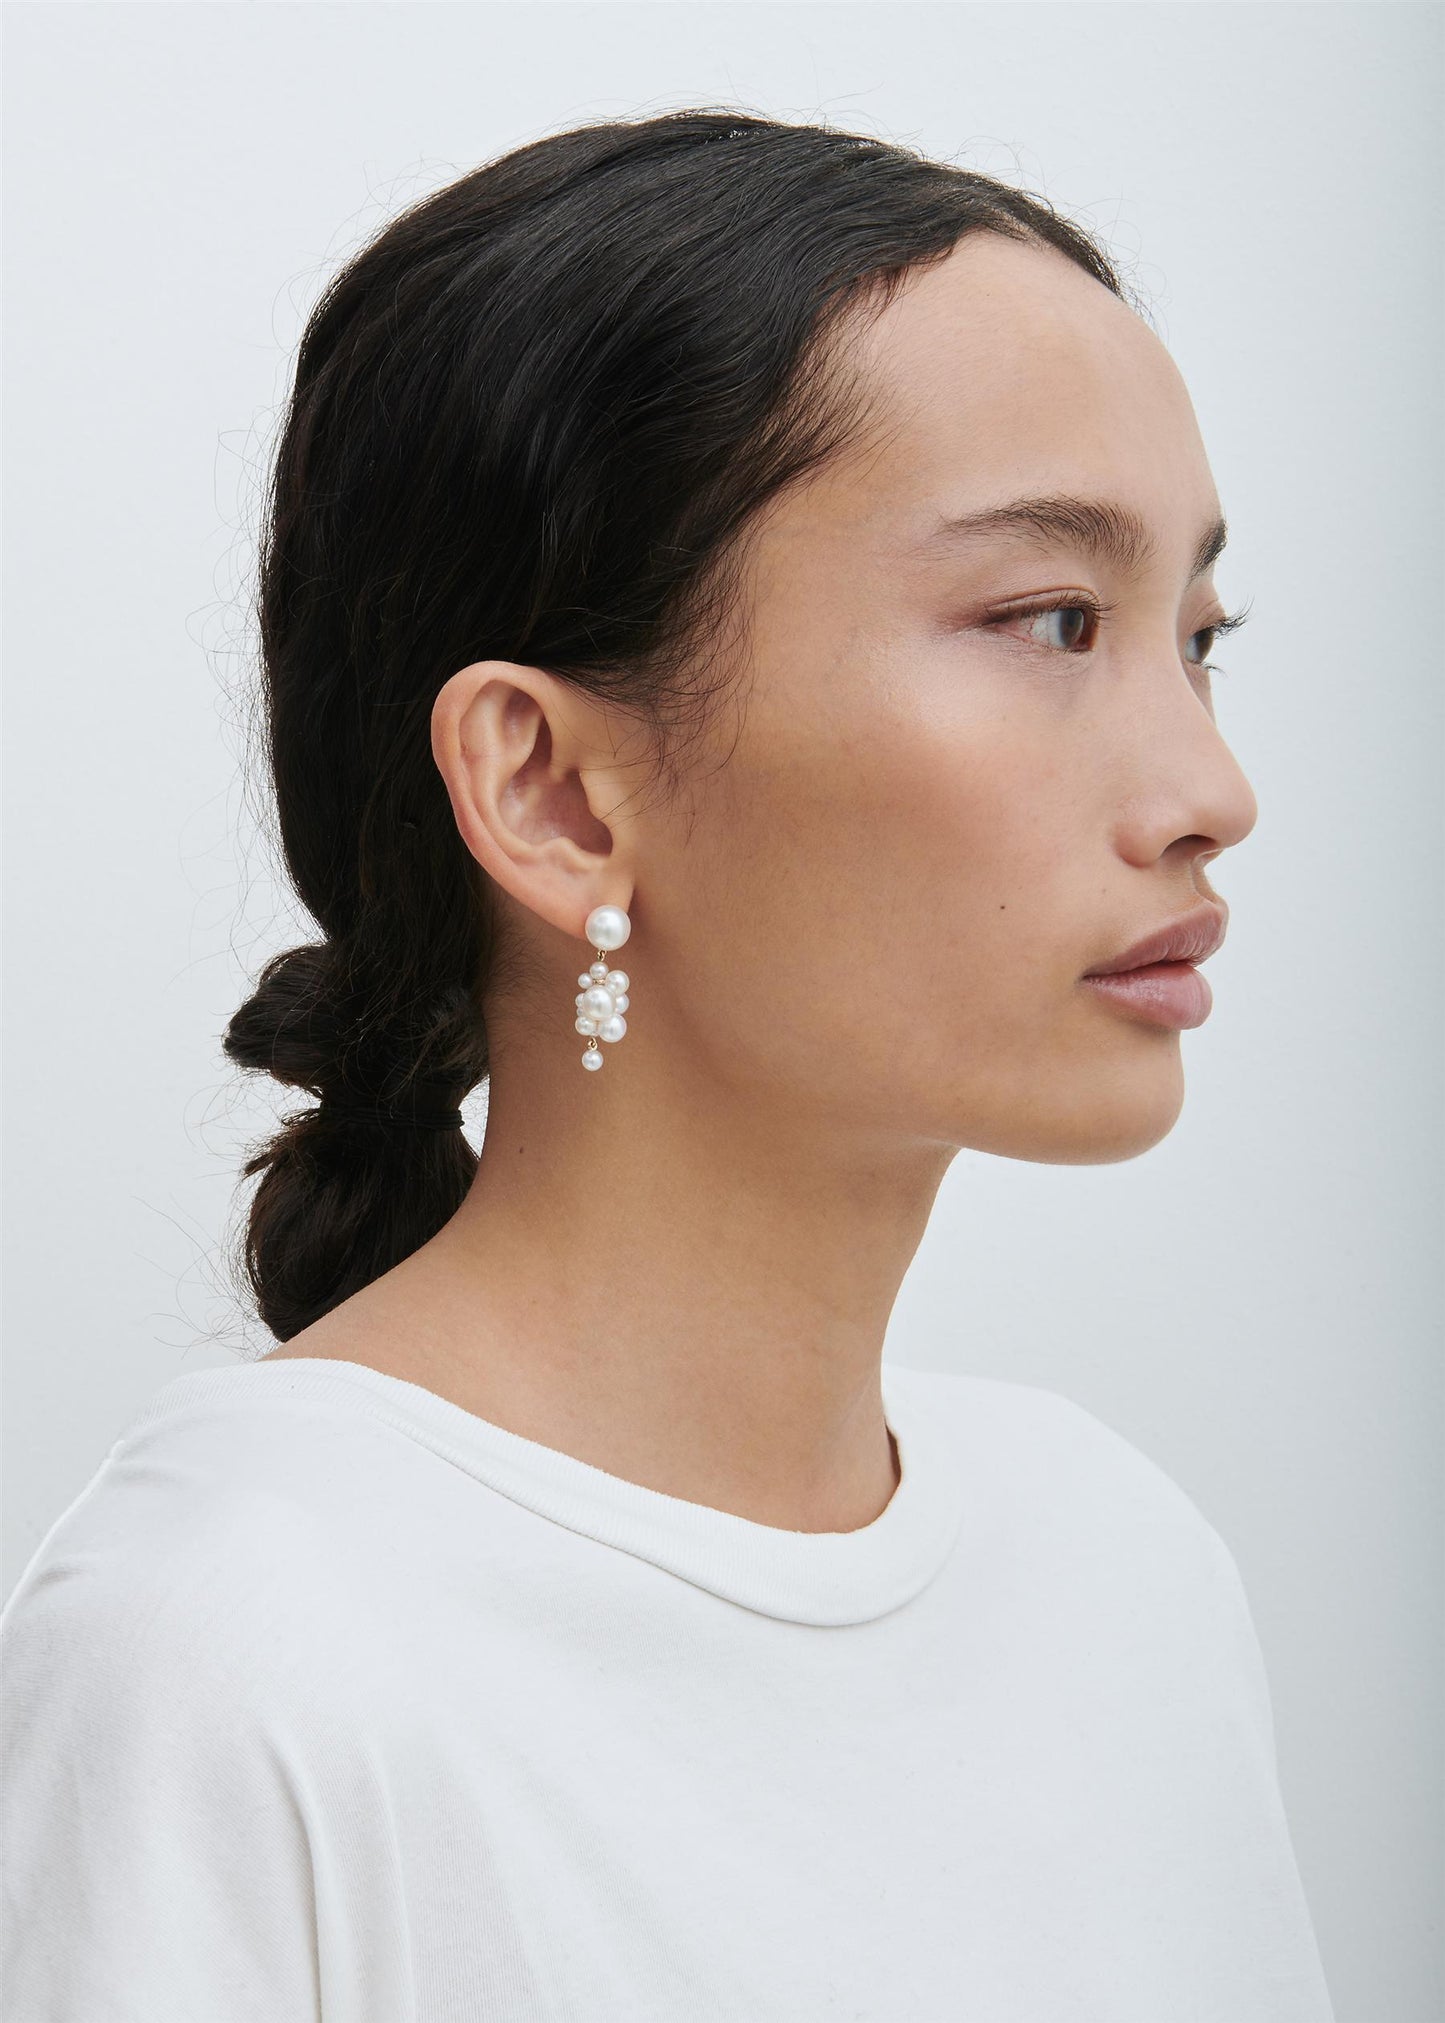 Boticelli Pearl Earrings by Sophie Bille Brahe